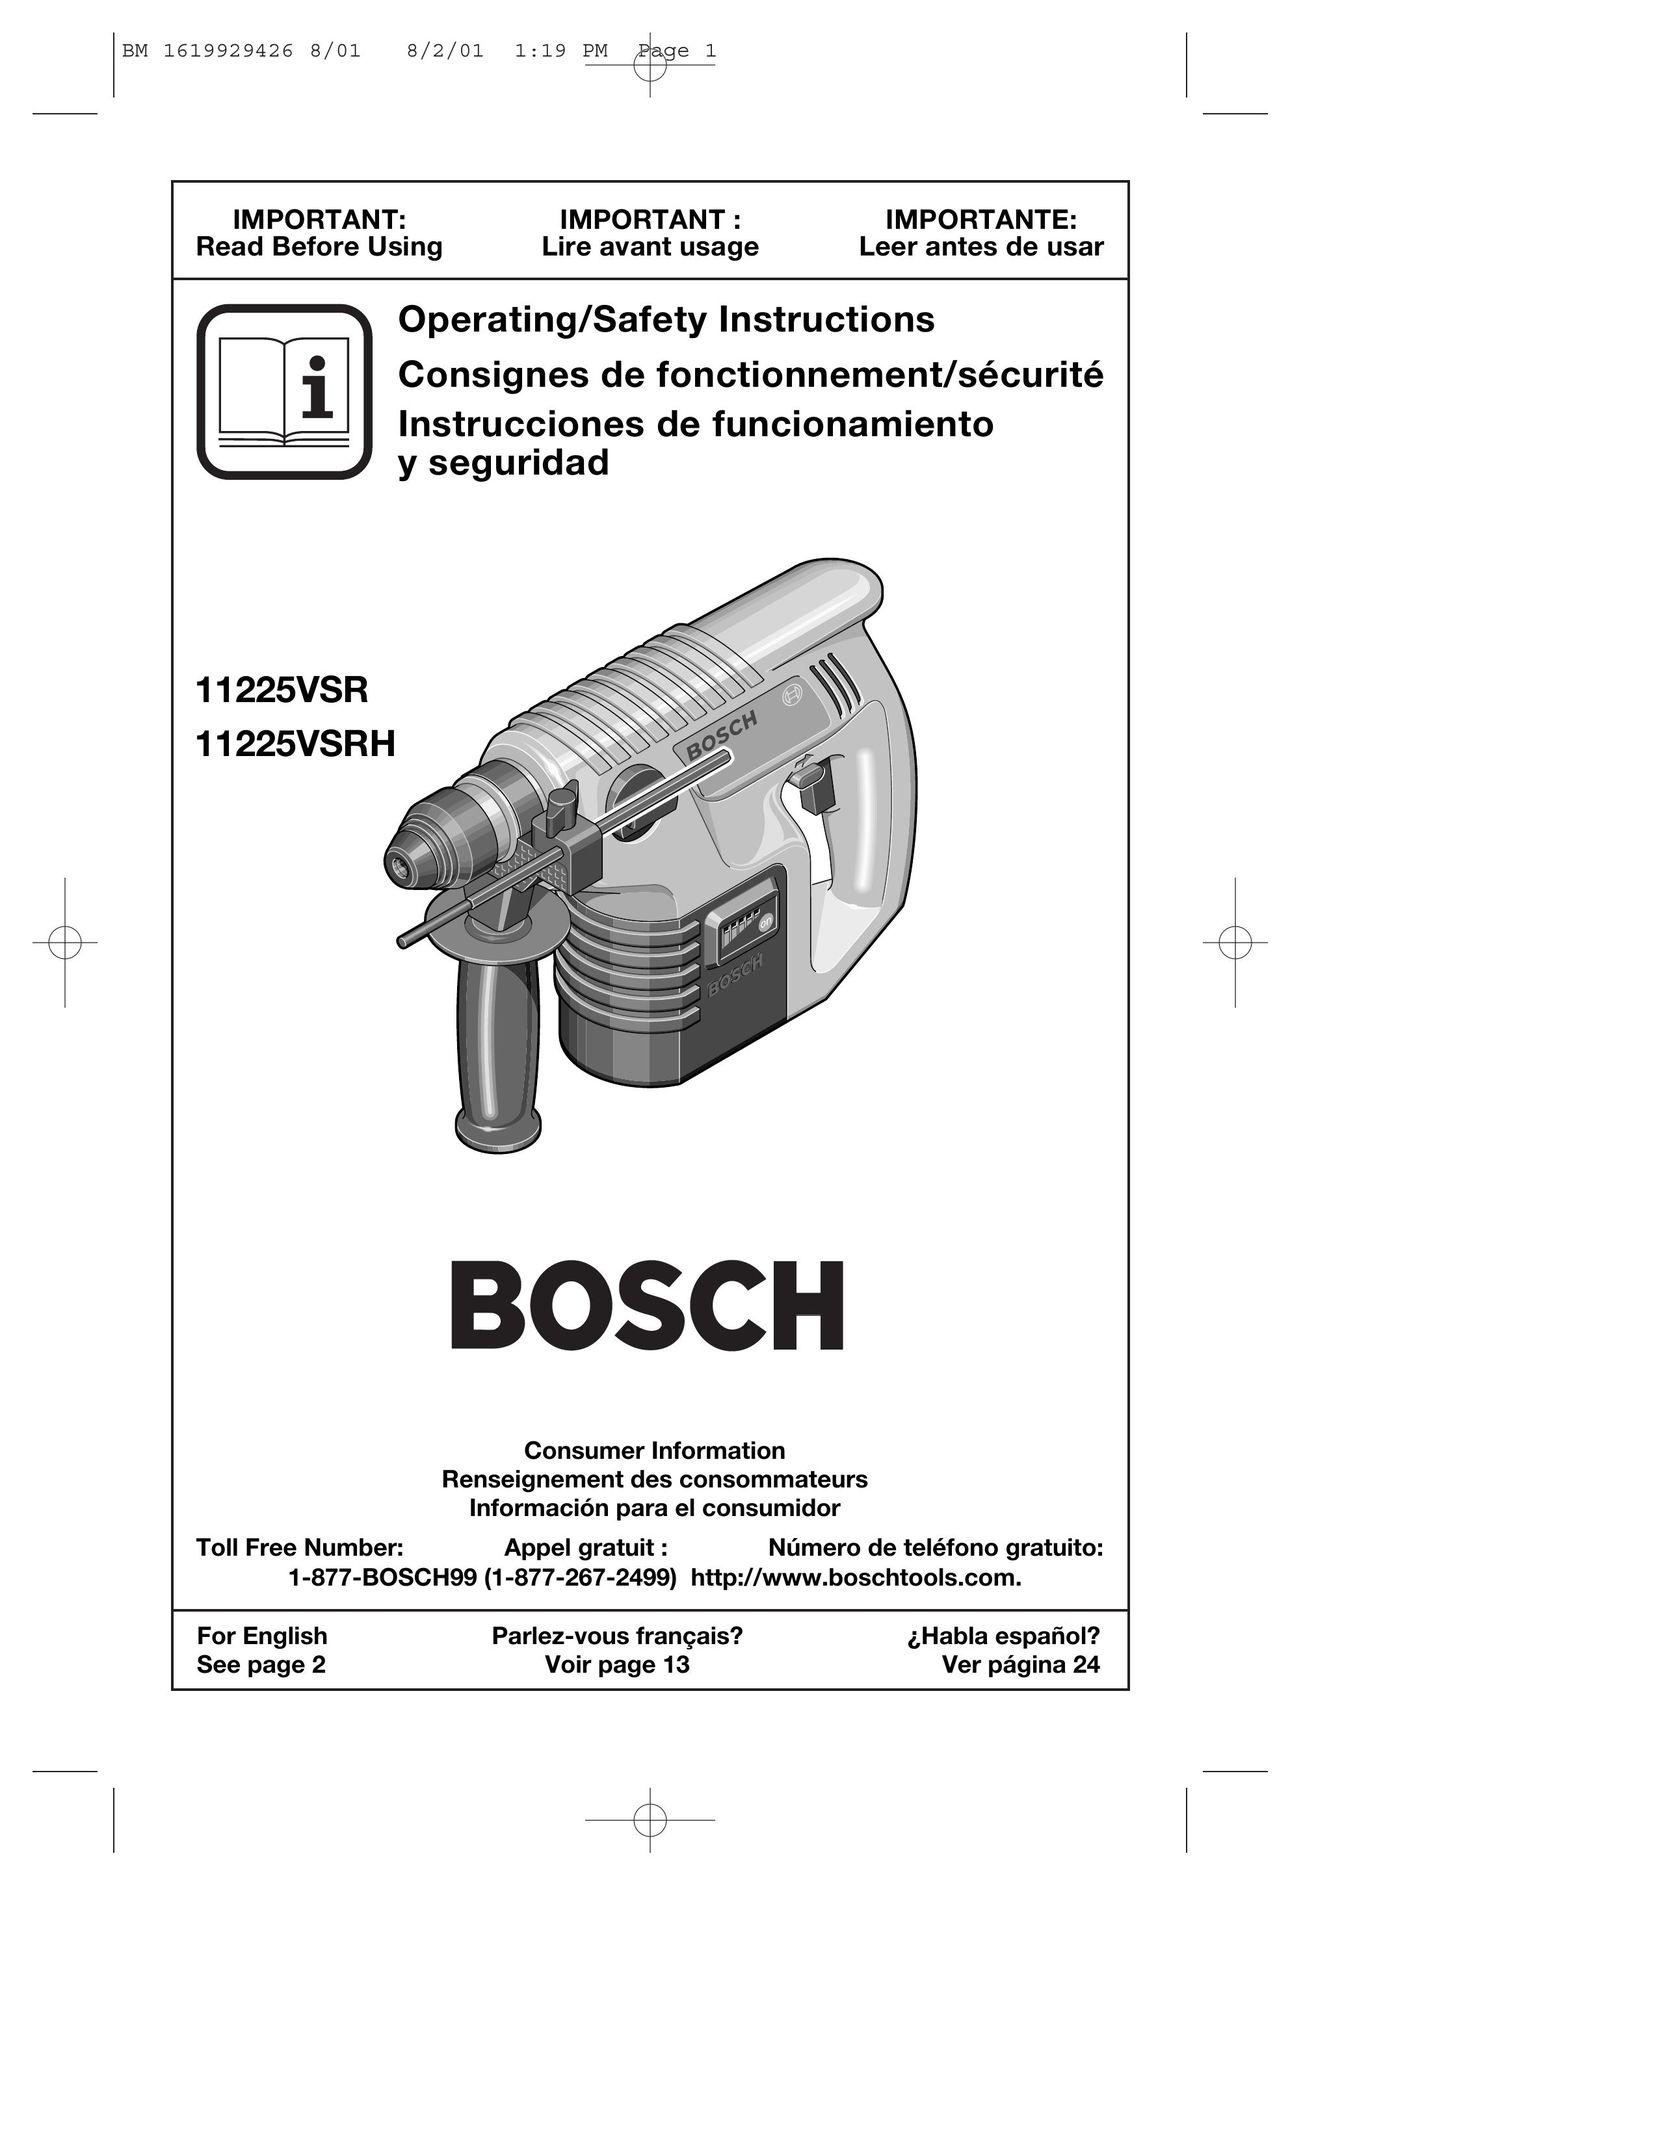 Bosch Power Tools cordless hammer Power Hammer User Manual